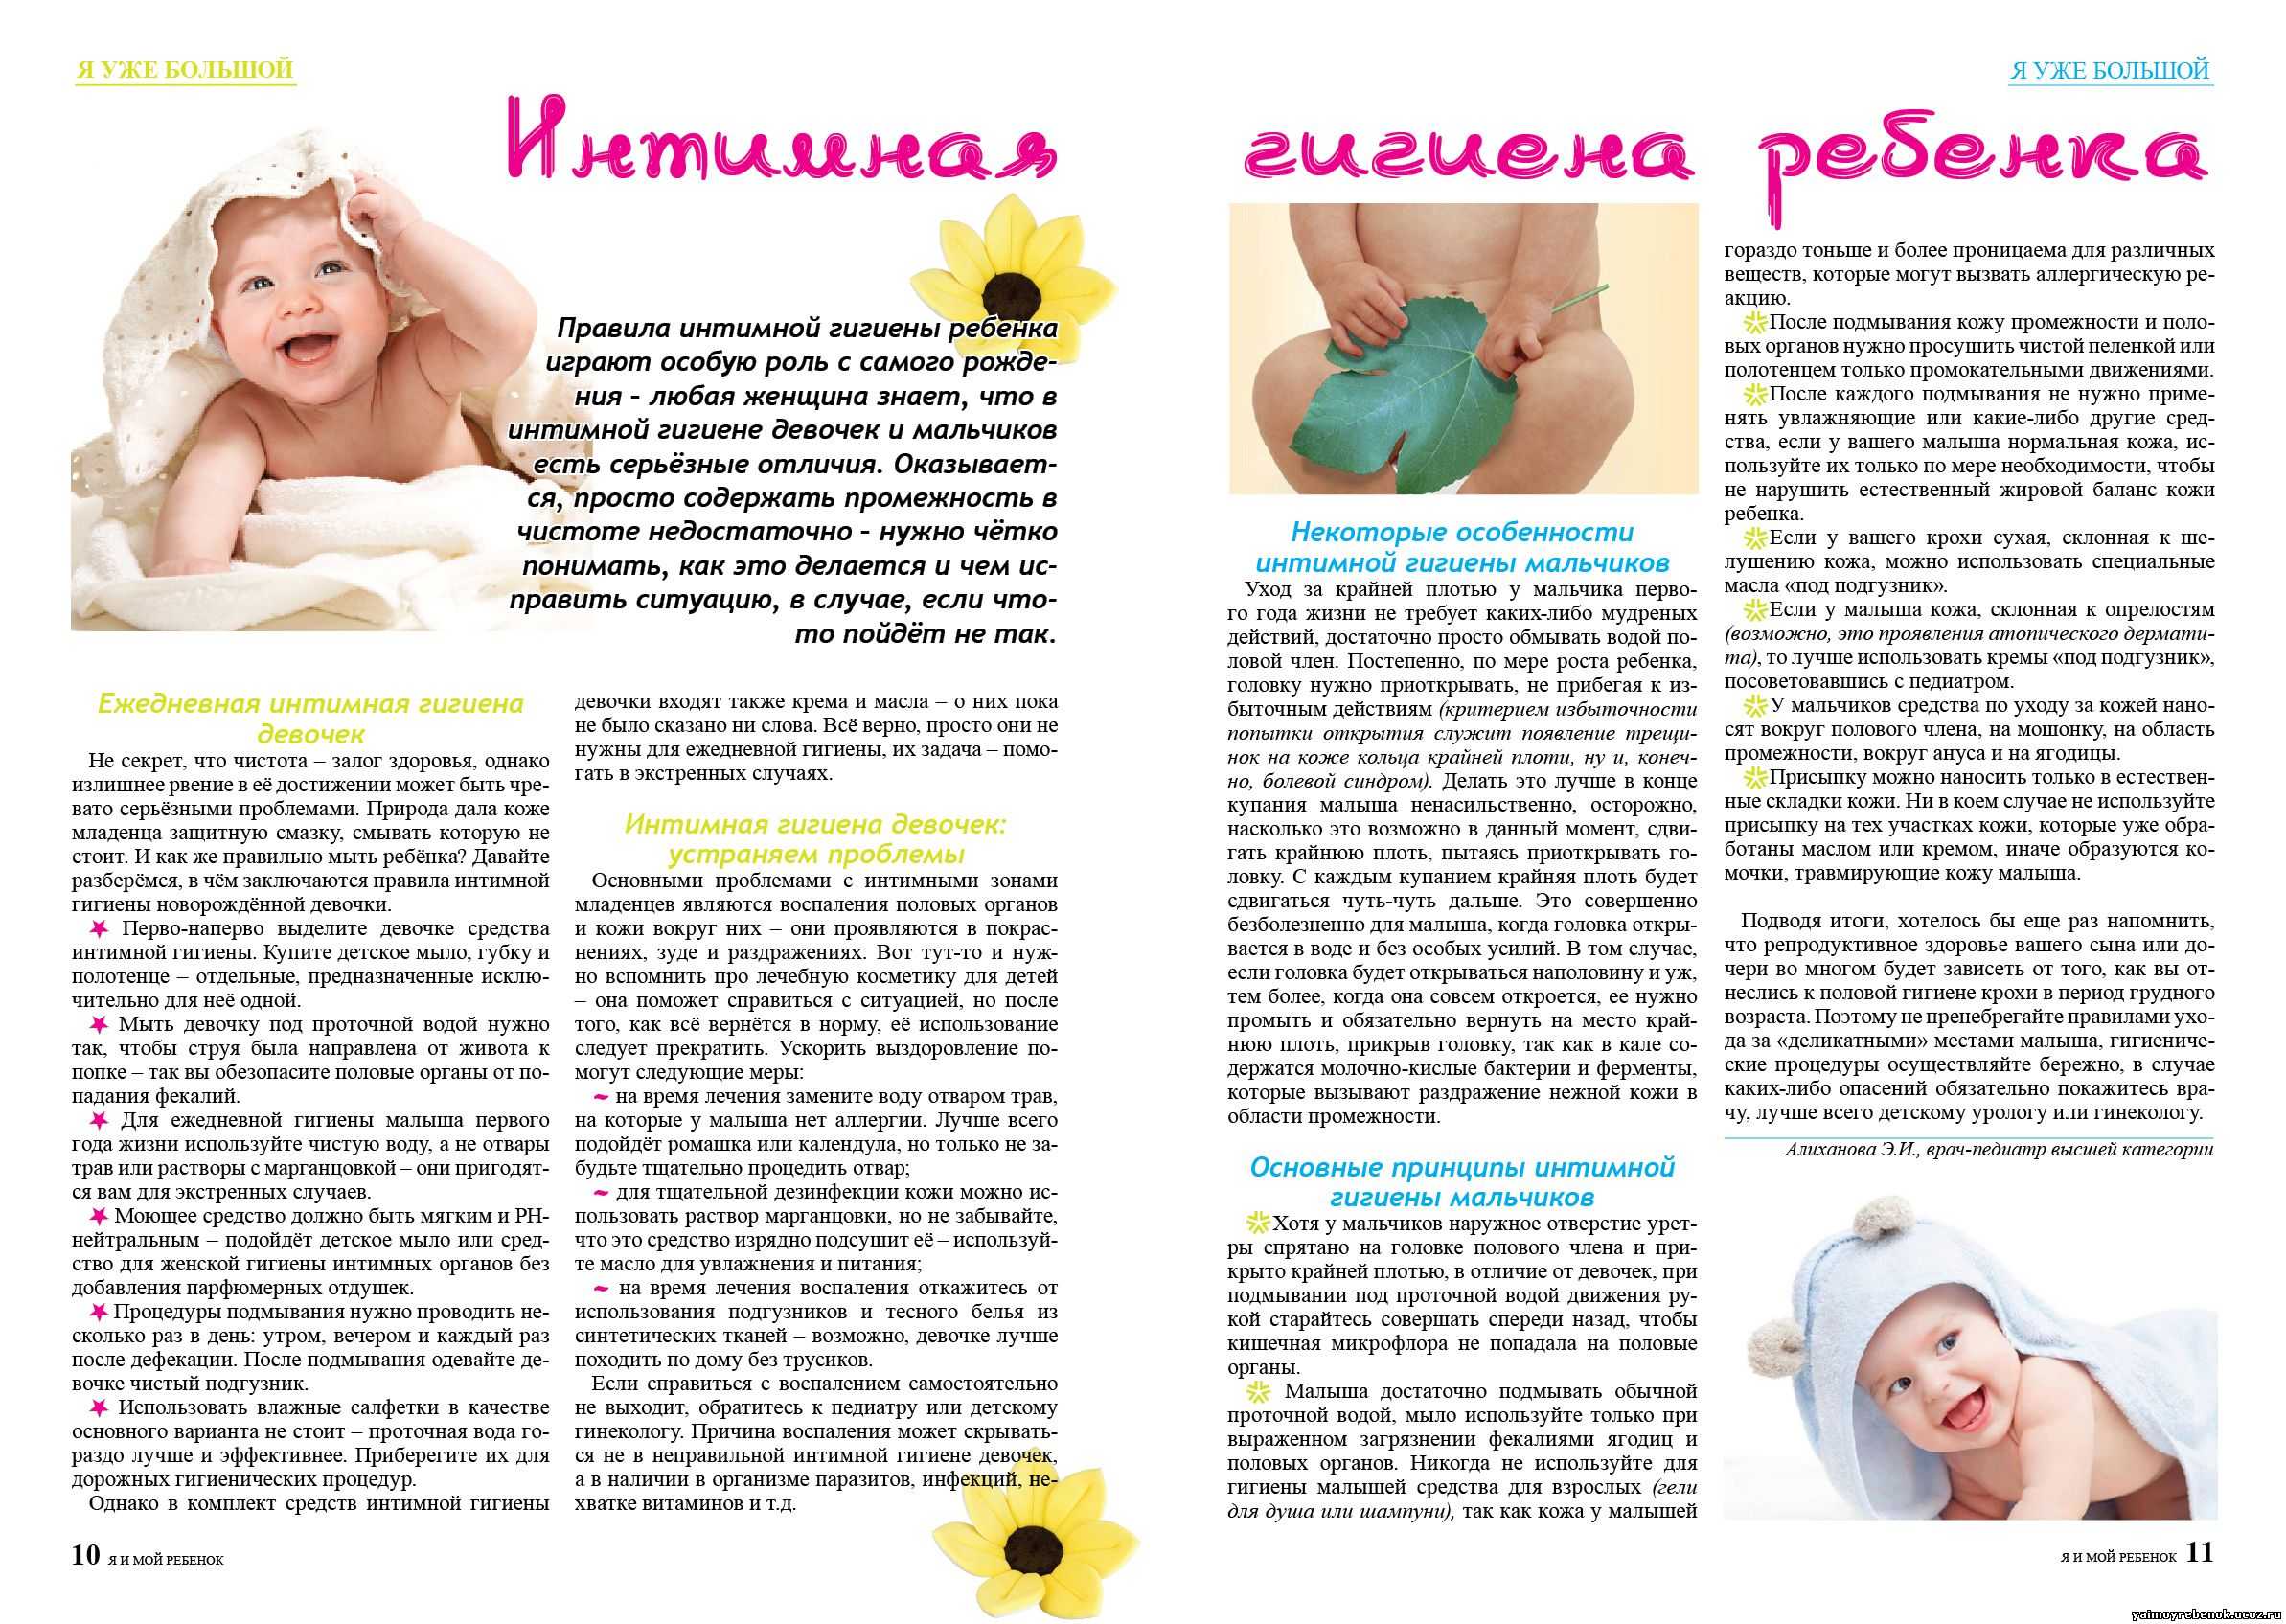 Особенности первых трех месяцев жизни новорожденного: уход кормление сон Связь мамы и ребенка Что меняется после 3-х месяцев